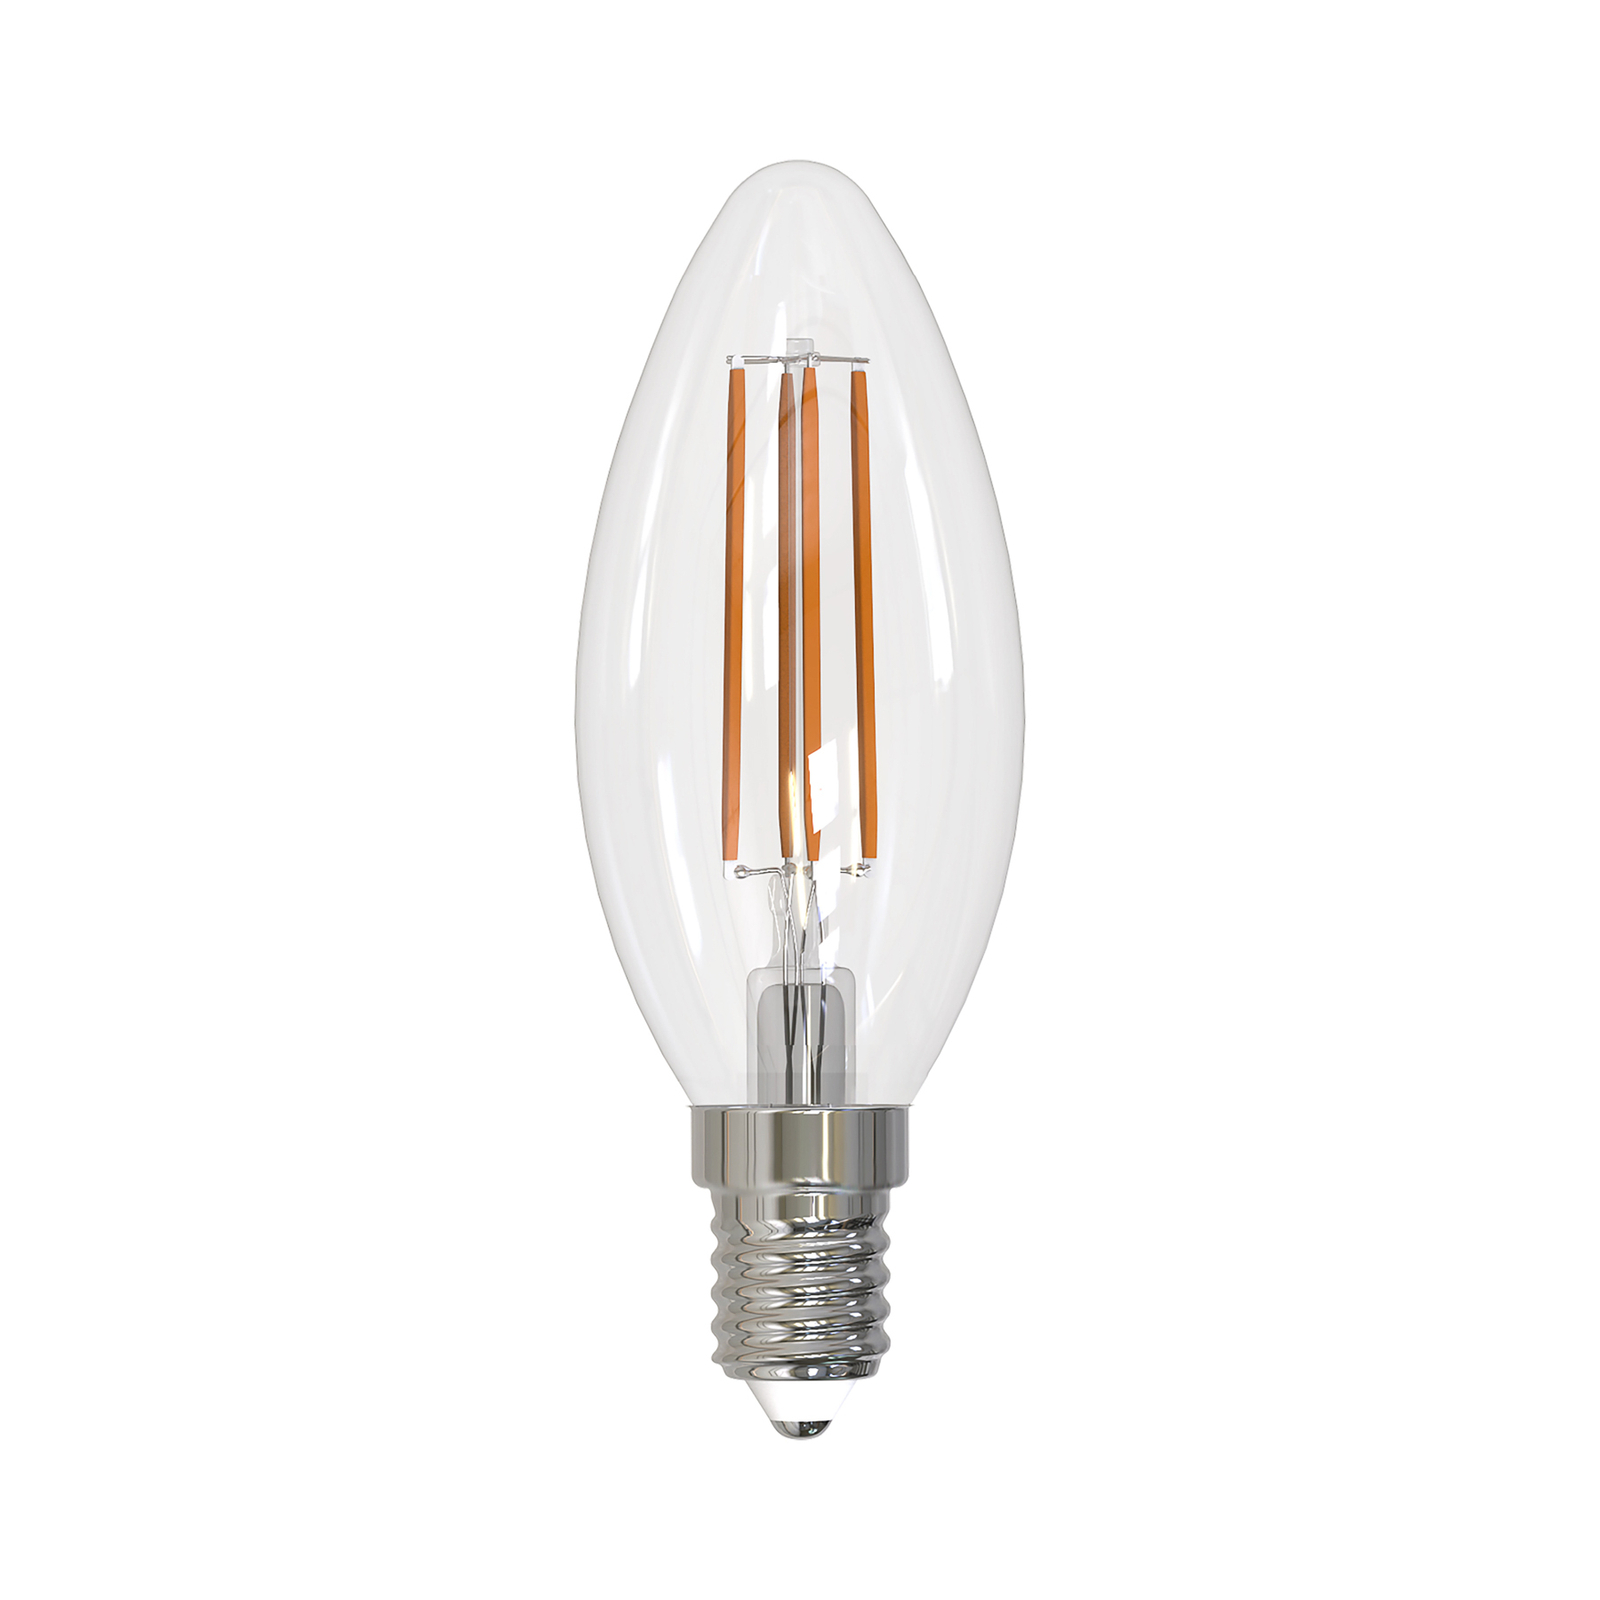 Arcchio filament LED bulb E14 candle, set of 2, 4000 K